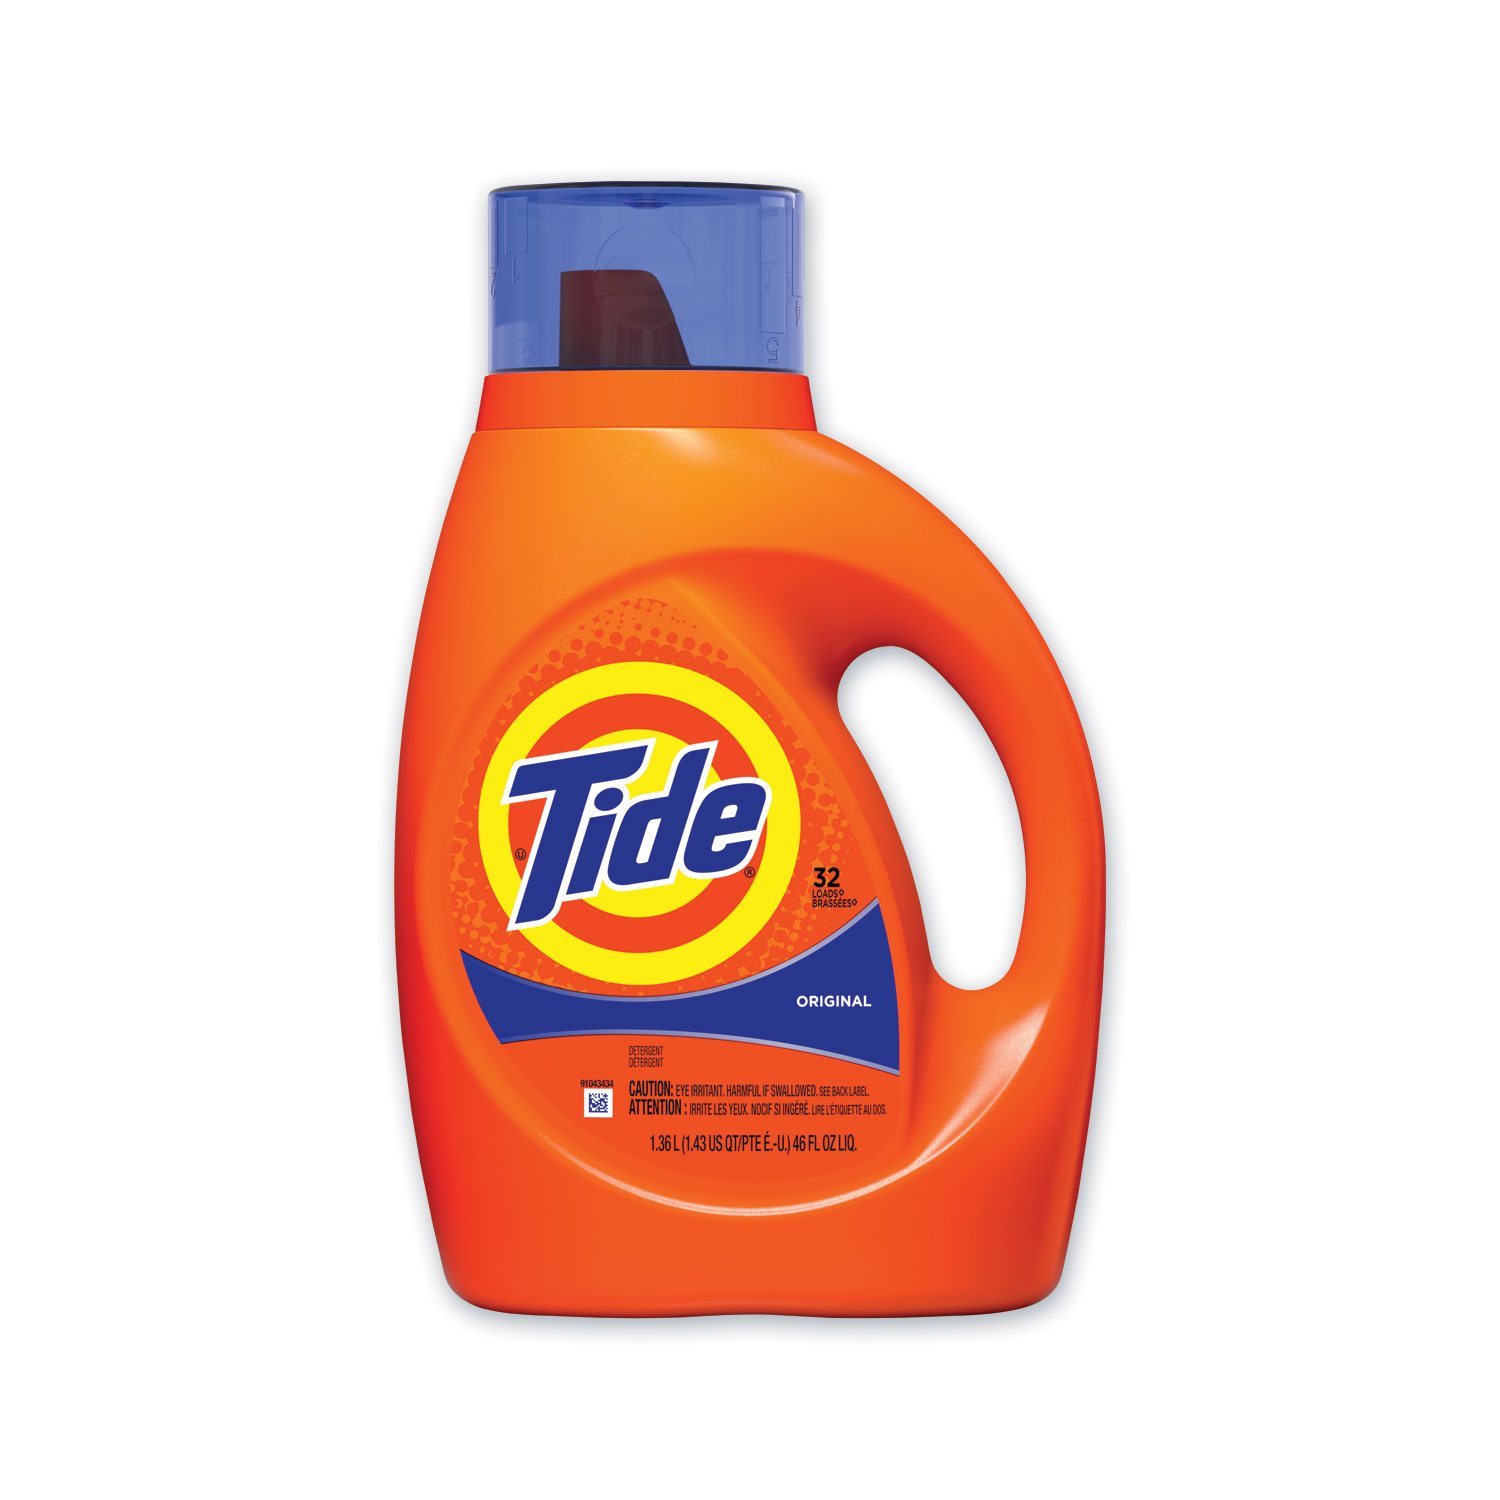 Tide® Liquid Tide Laundry Detergent, 32 Loads, 46 oz Bottle, 6/Carton